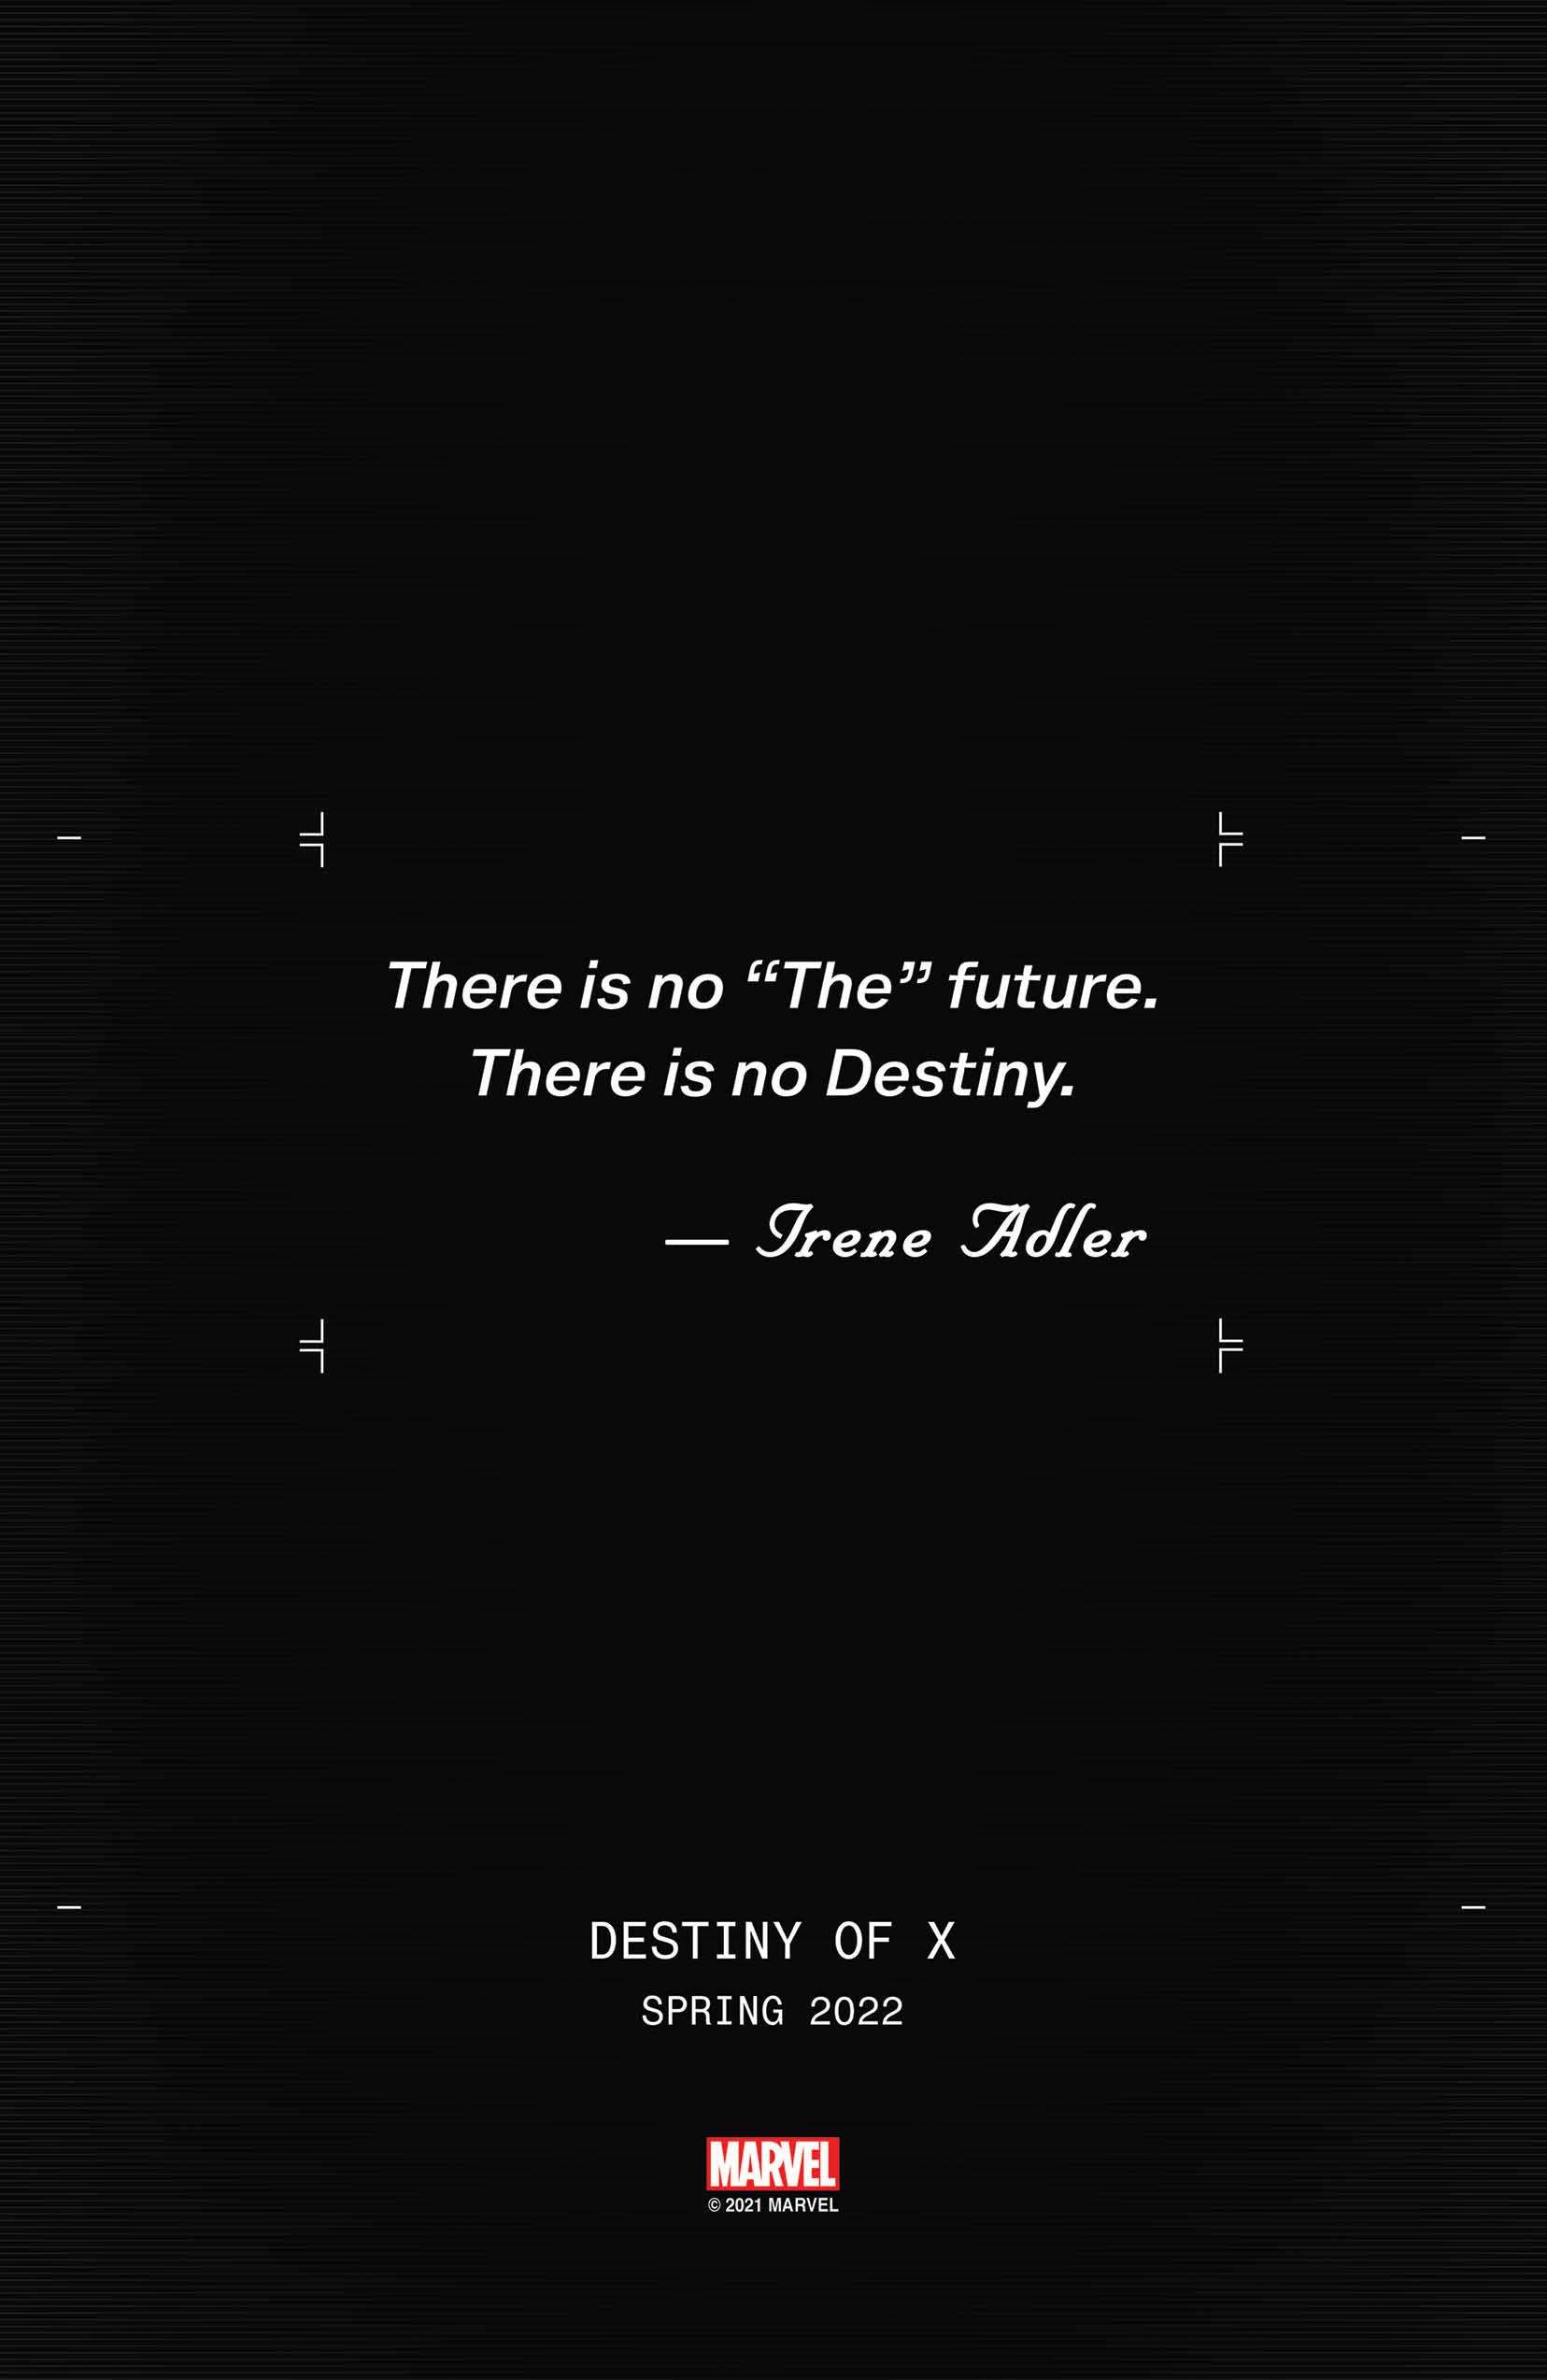 DESTINY OF X: Marvel anuncia nova era dos X-Men